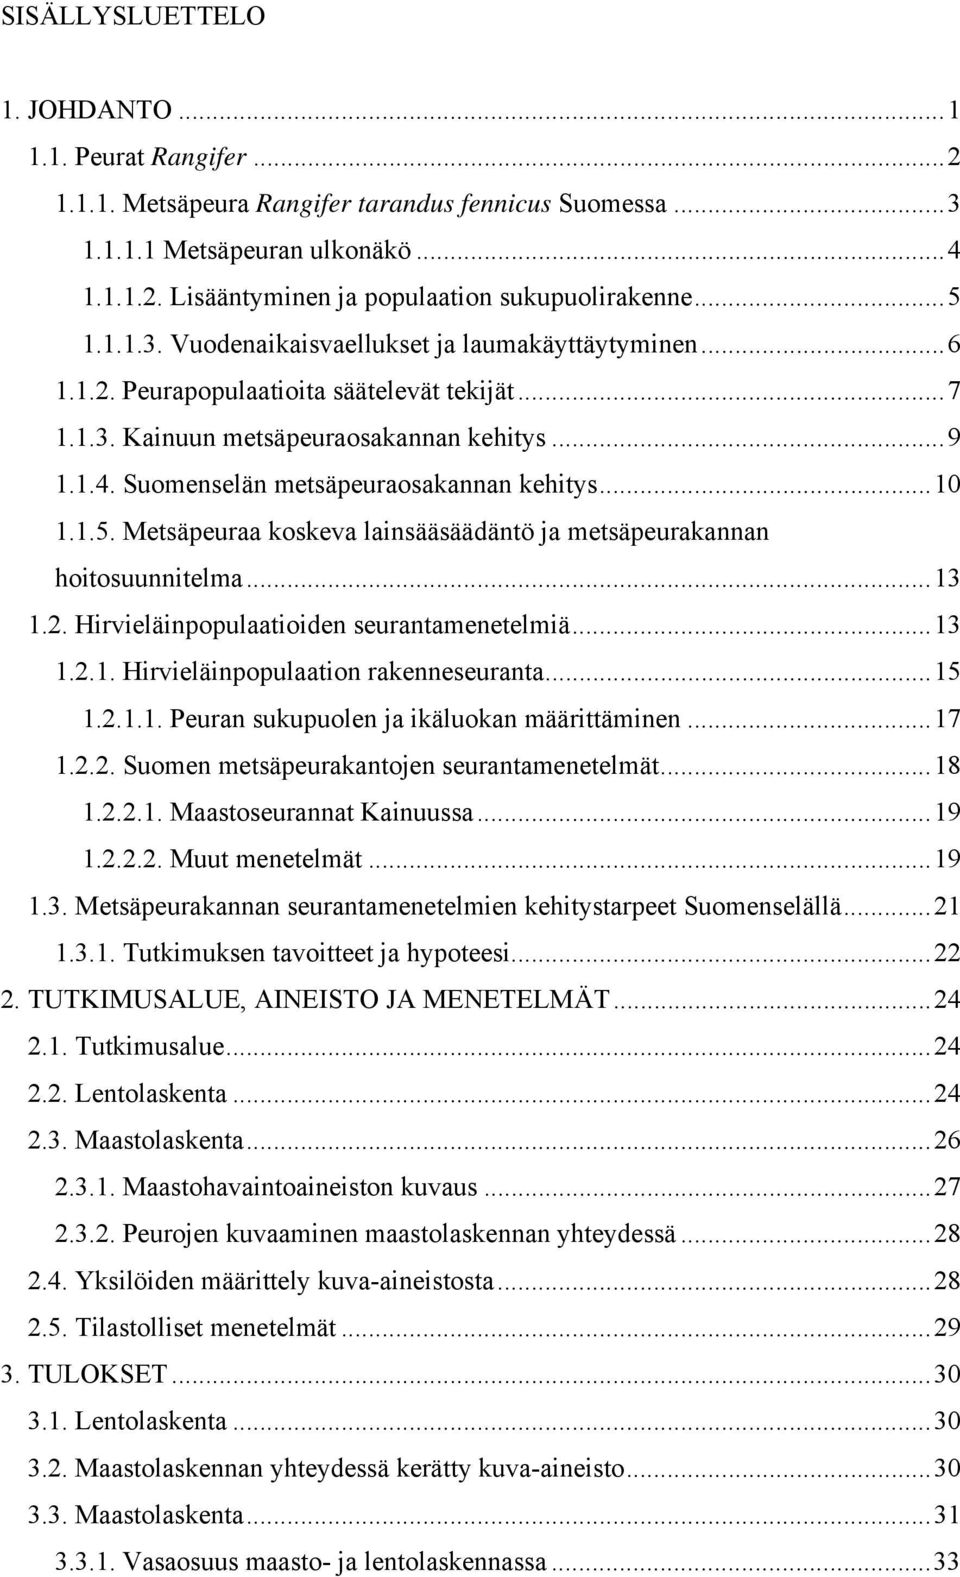 Suomenselän metsäpeuraosakannan kehitys...10 1.1.5. Metsäpeuraa koskeva lainsääsäädäntö ja metsäpeurakannan hoitosuunnitelma...13 1.2. Hirvieläinpopulaatioiden seurantamenetelmiä...13 1.2.1. Hirvieläinpopulaation rakenneseuranta.